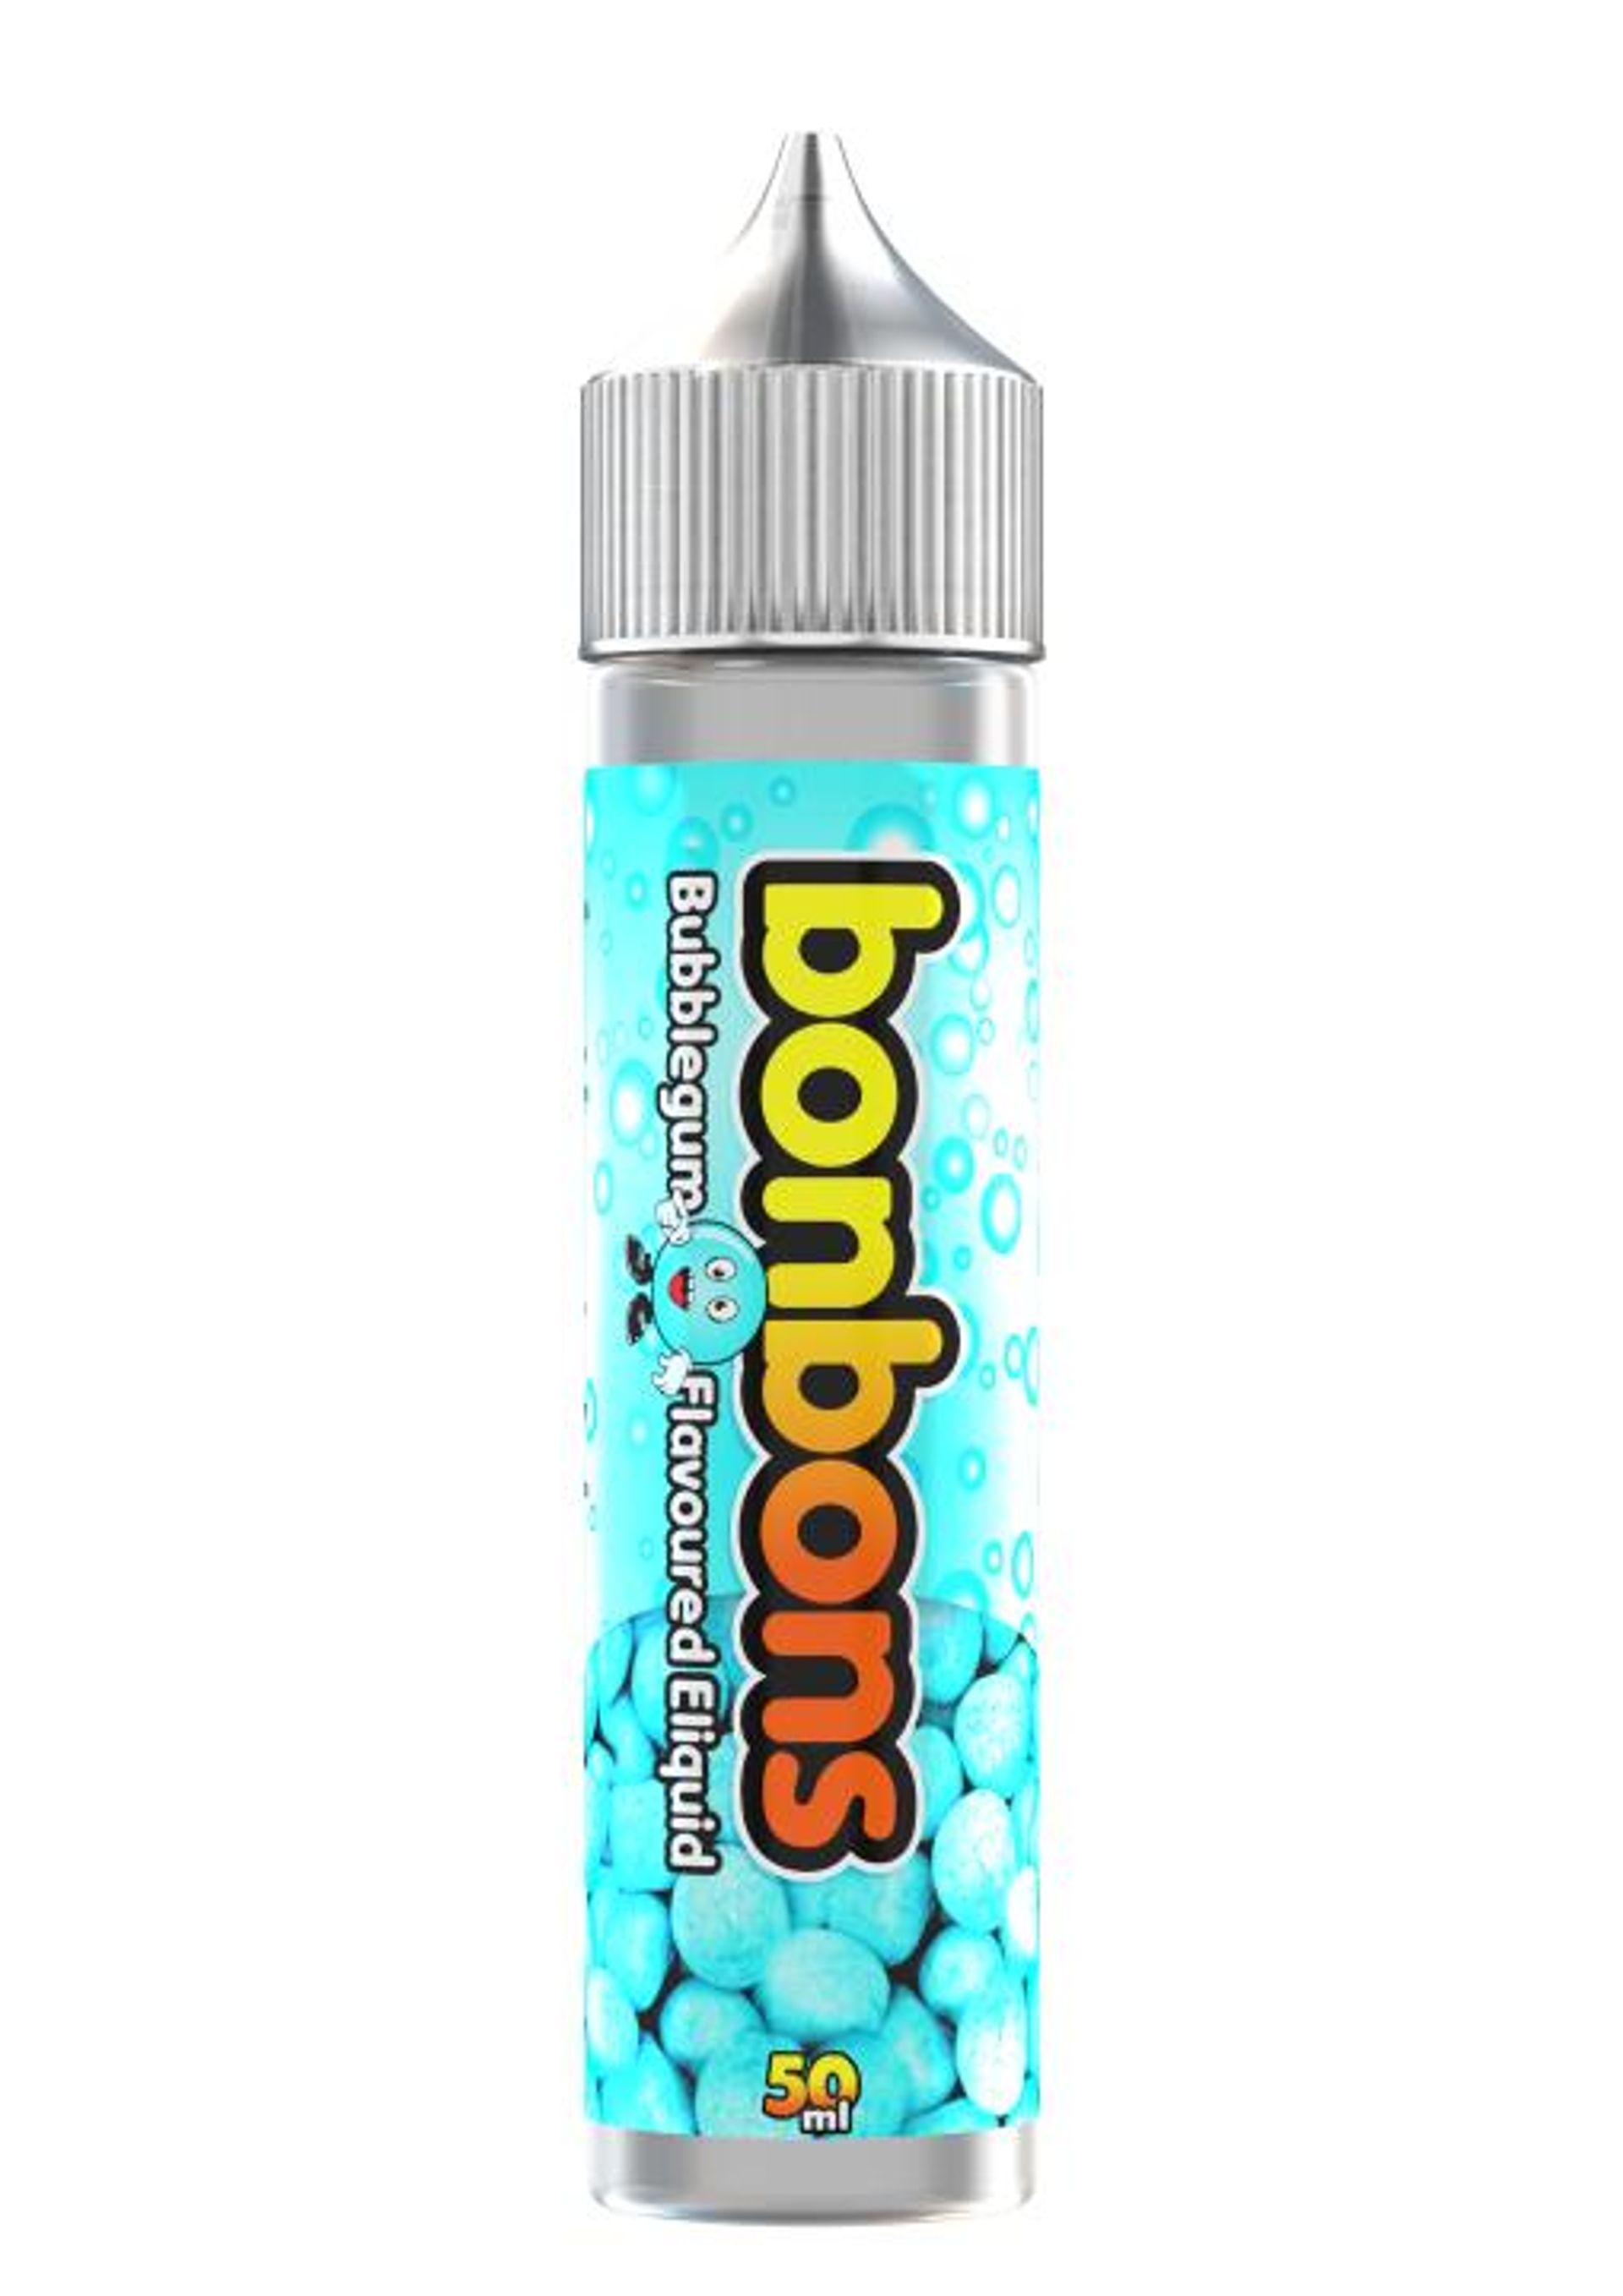 Image of Bubble Gum by Bonbons